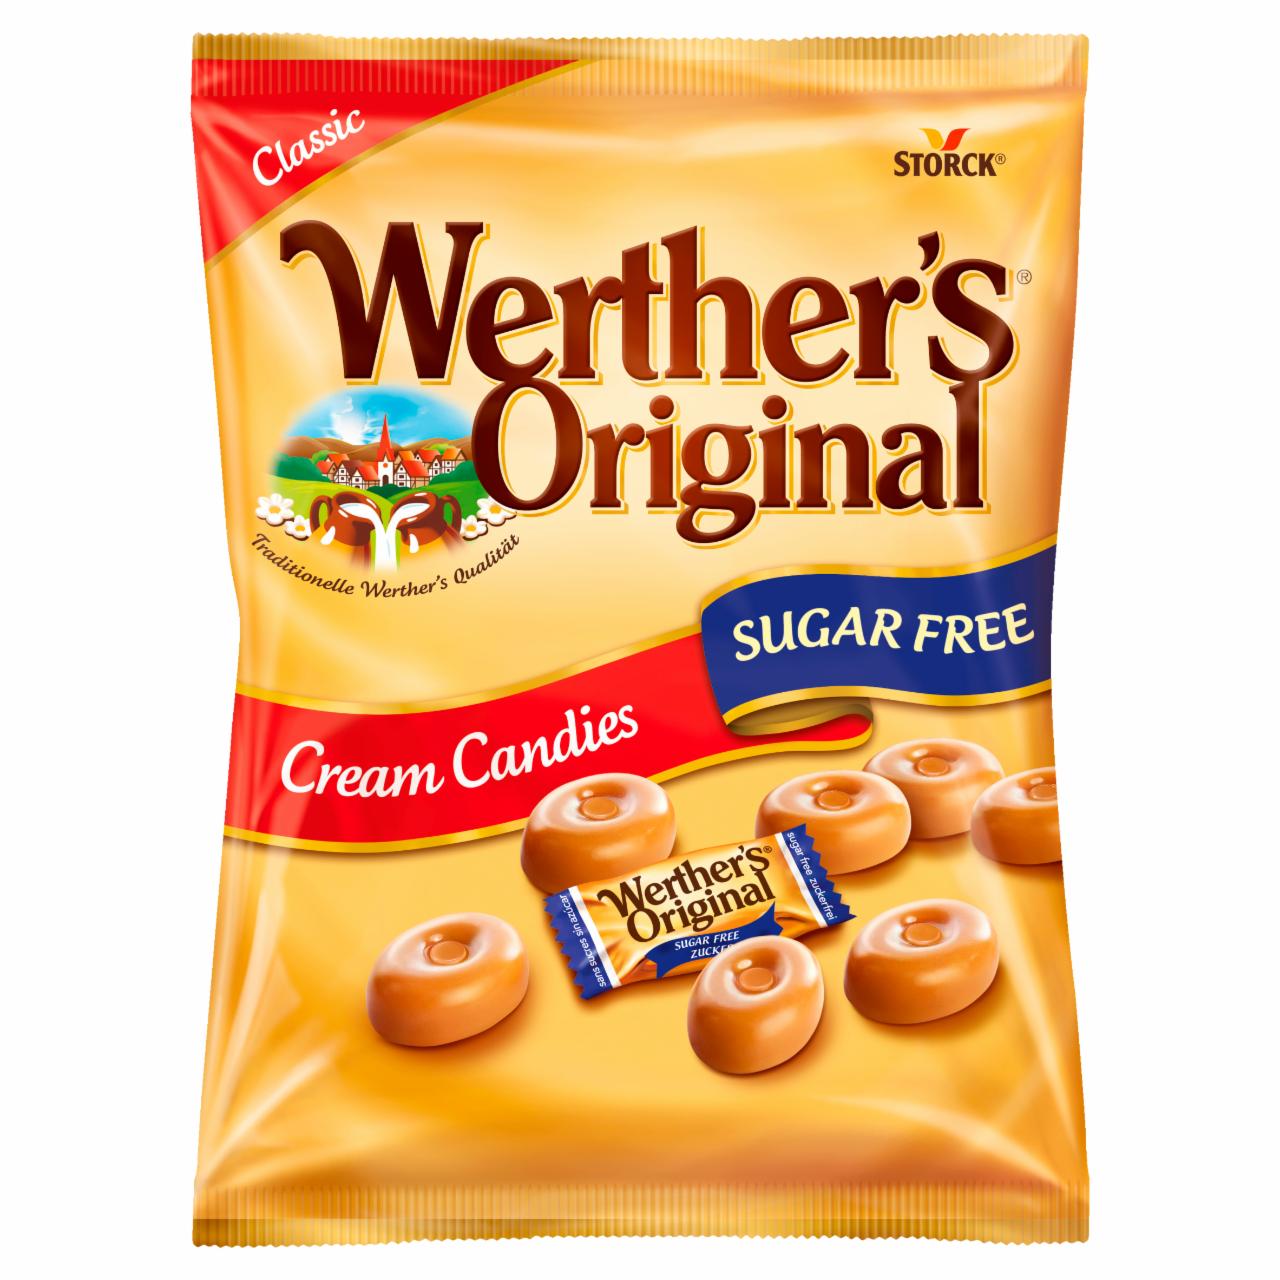 Képek - Werther's Original cukormentes tejszínes töltetlen keménycukorka édesítőszerekkel 70 g